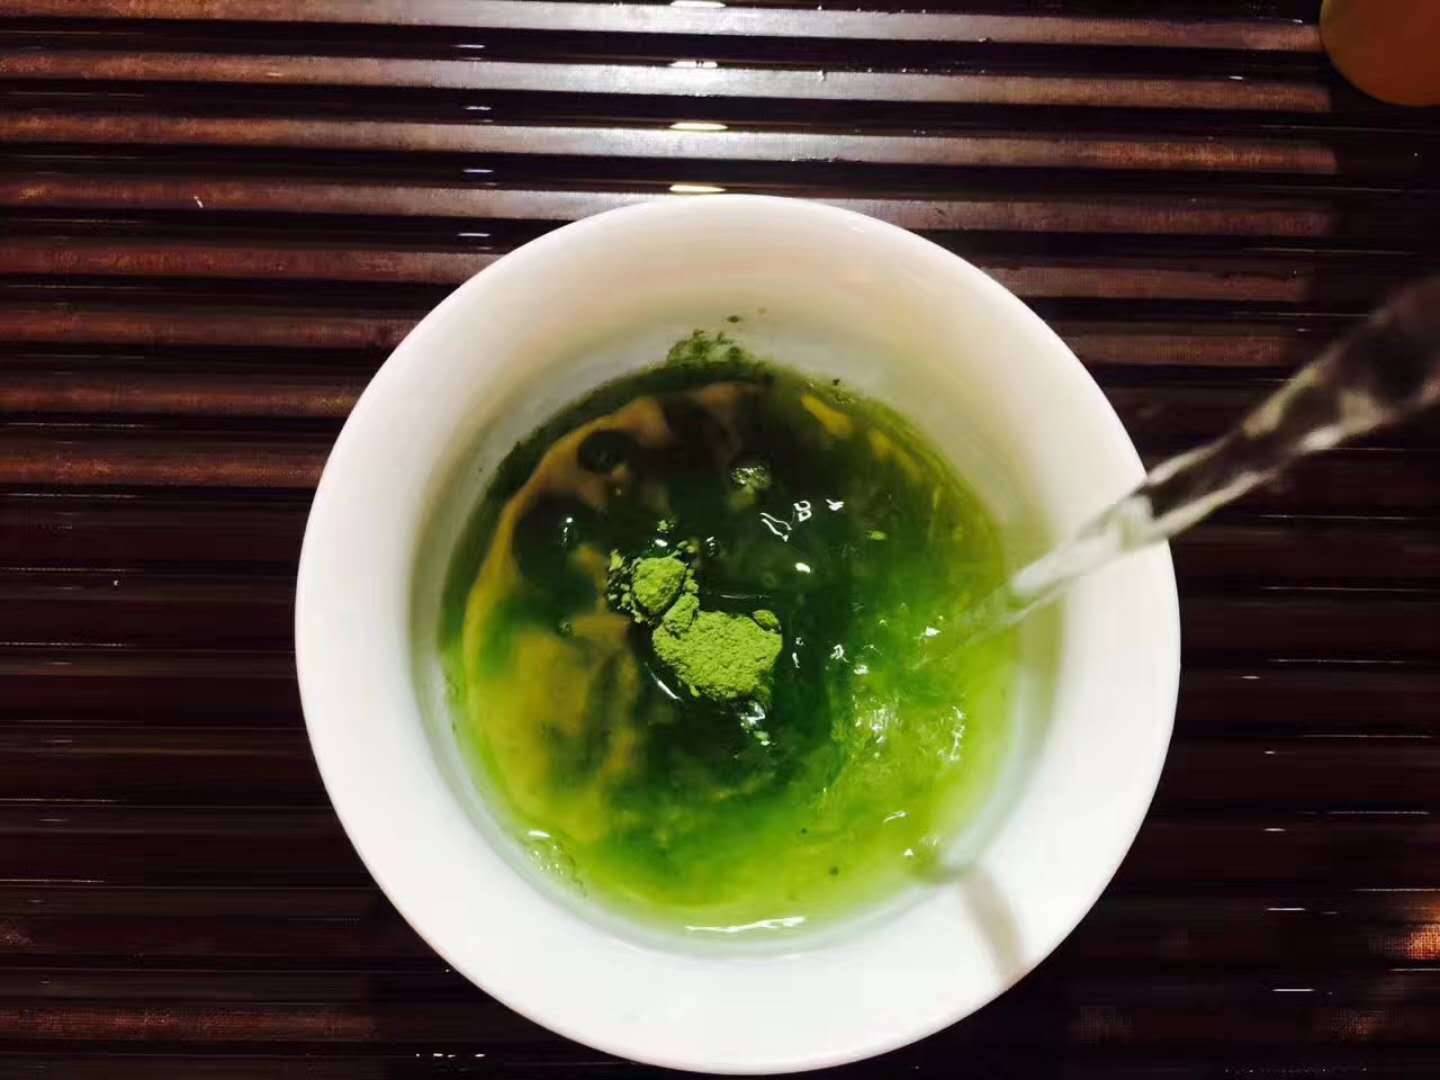 HelloYoung Golden Herb Japanese Organic Ceremonial [Grade 1] Matcha Green Tea Powder